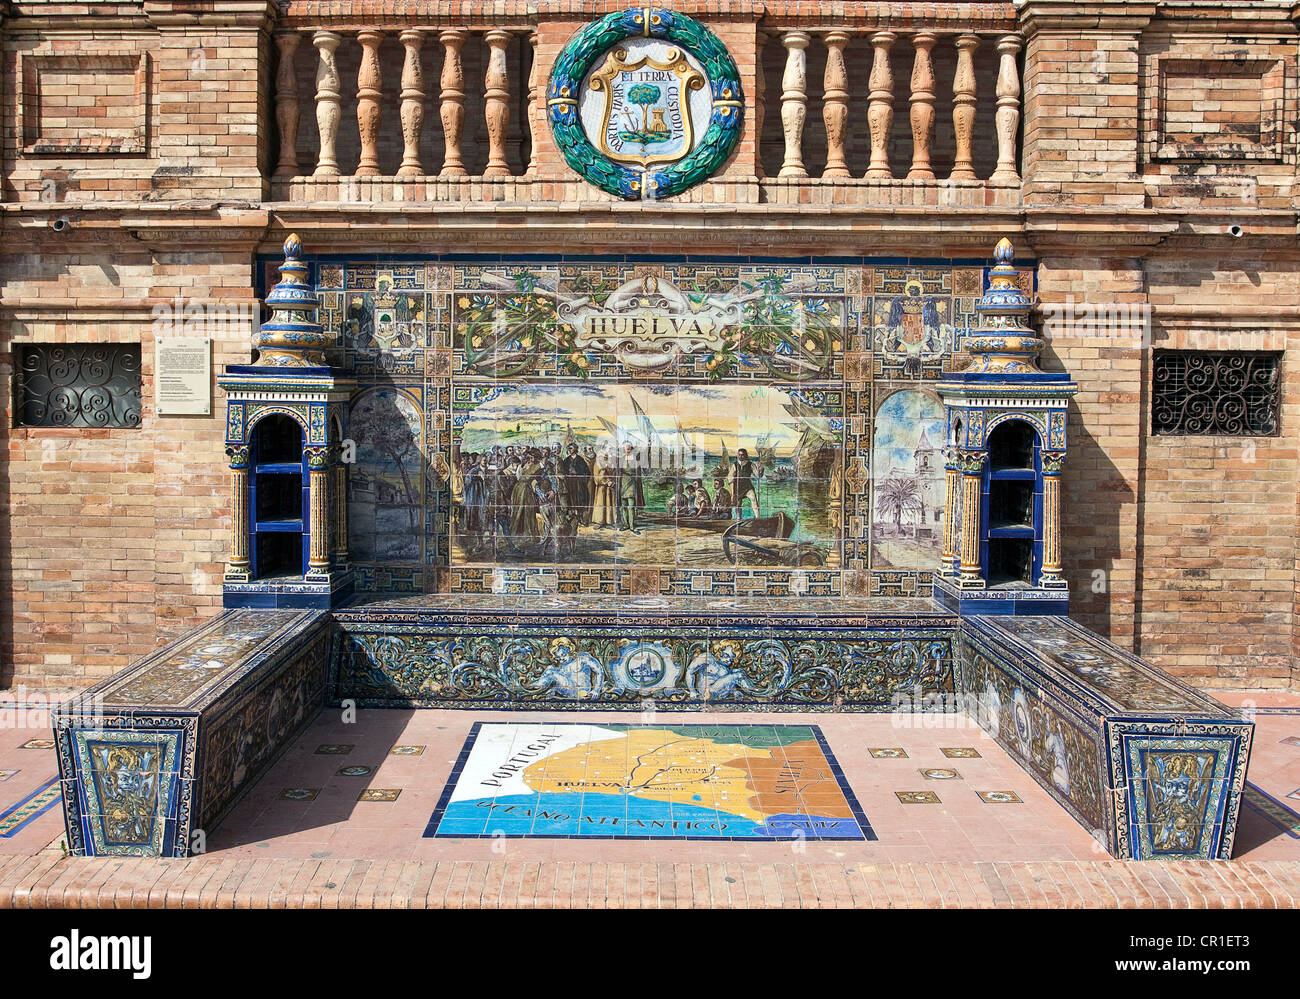 Mosaïque de carreaux d'une province d'Espagne, la Plaza de España, Séville, Espagne, Europe Banque D'Images